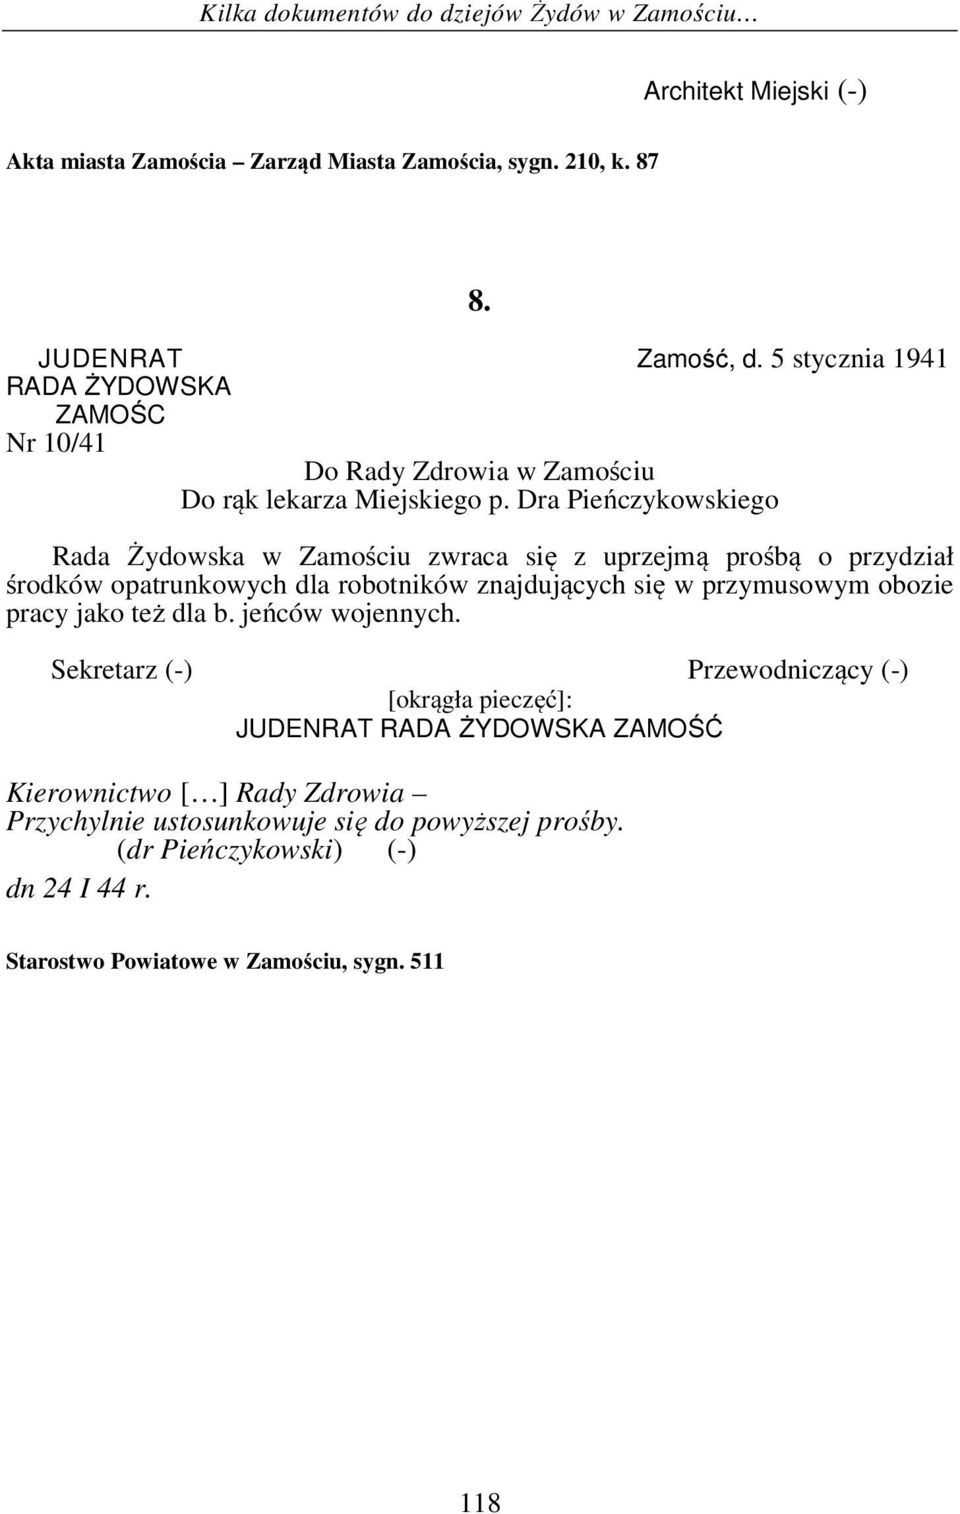 Dra Pieńczykowskiego Rada Żydowska w Zamościu zwraca się z uprzejmą prośbą o przydział środków opatrunkowych dla robotników znajdujących się w przymusowym obozie